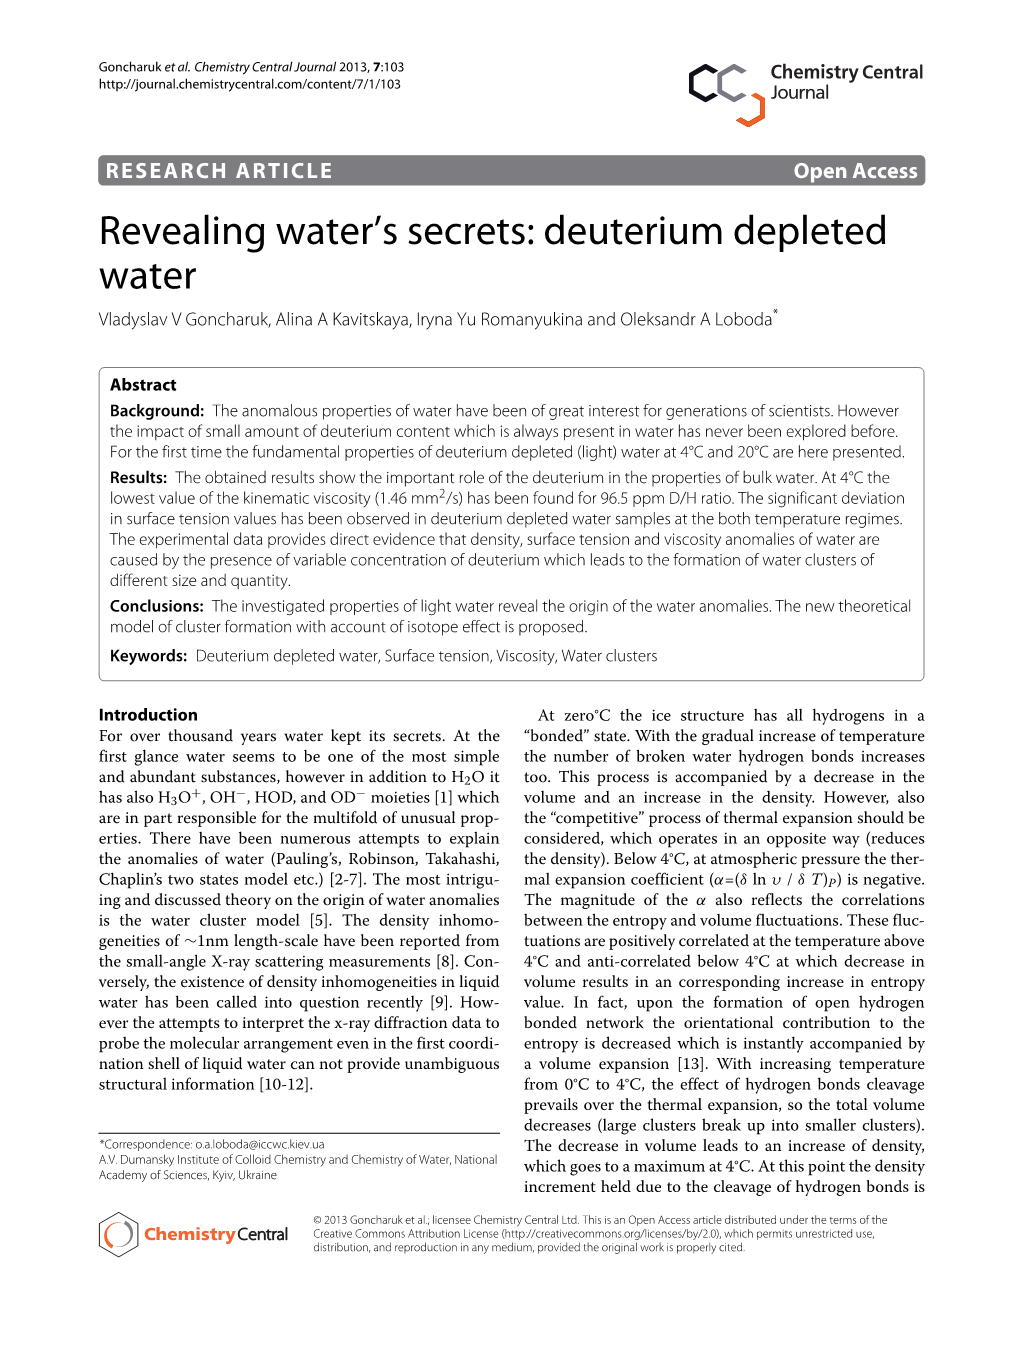 Revealing Water's Secrets: Deuterium Depleted Water